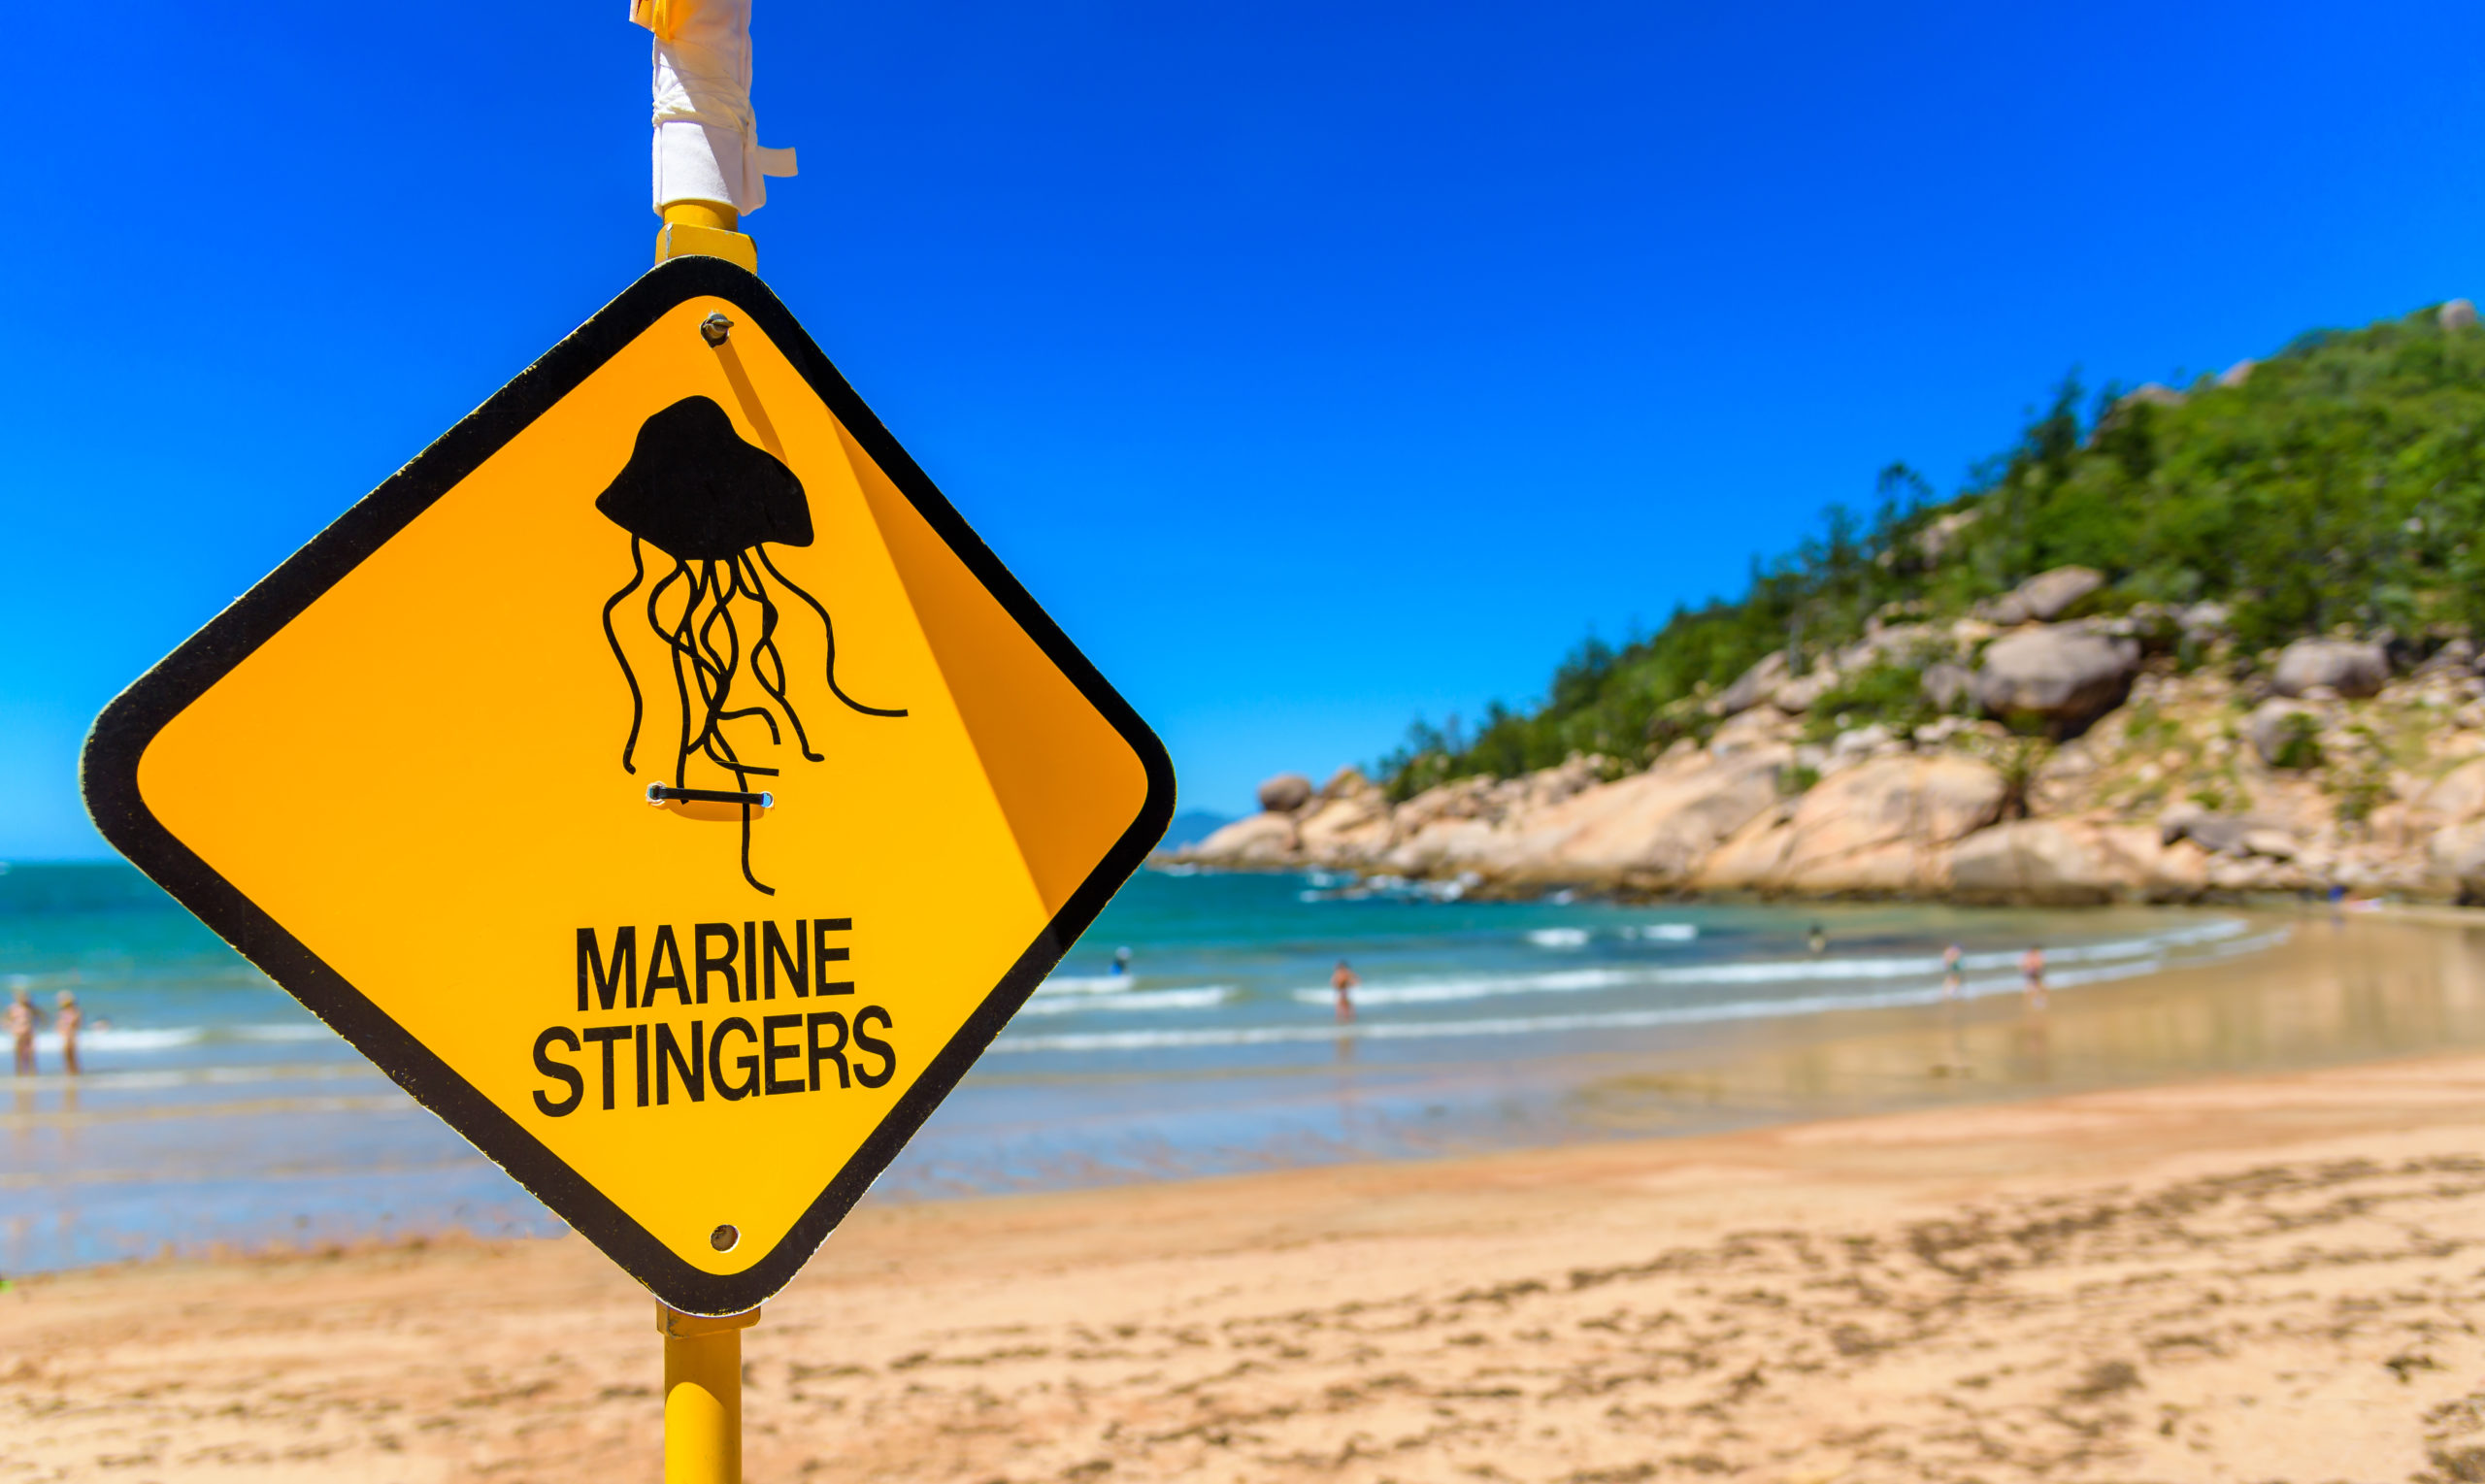 Deshalb müssen die australischen Behörden hier nachhelfen. Sie warnen in schönstem Terribilis-Gelb vor der unsichtbaren Gefahr im Wasser. | Adam Calaitzis, Shutterstock